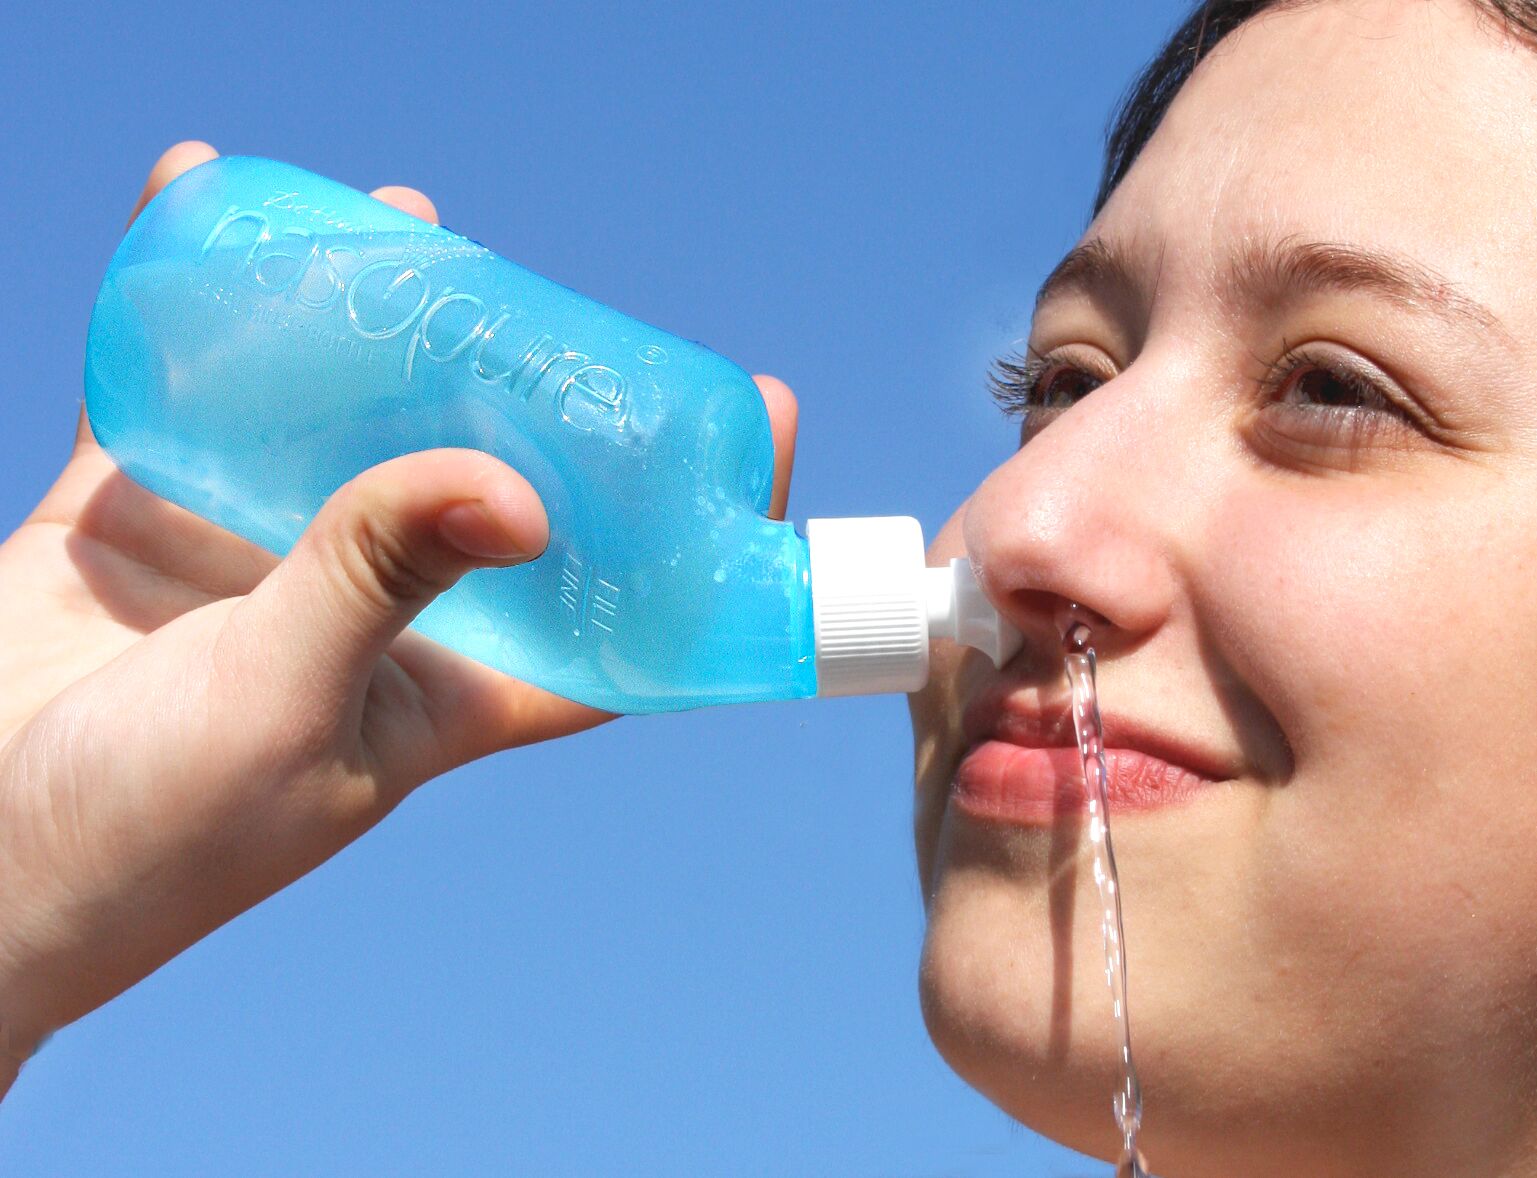 Правильное промывание носа солевым раствором. Промывание носа. Промывалка для носа. Полоскание носа. Вода для промывания носа.